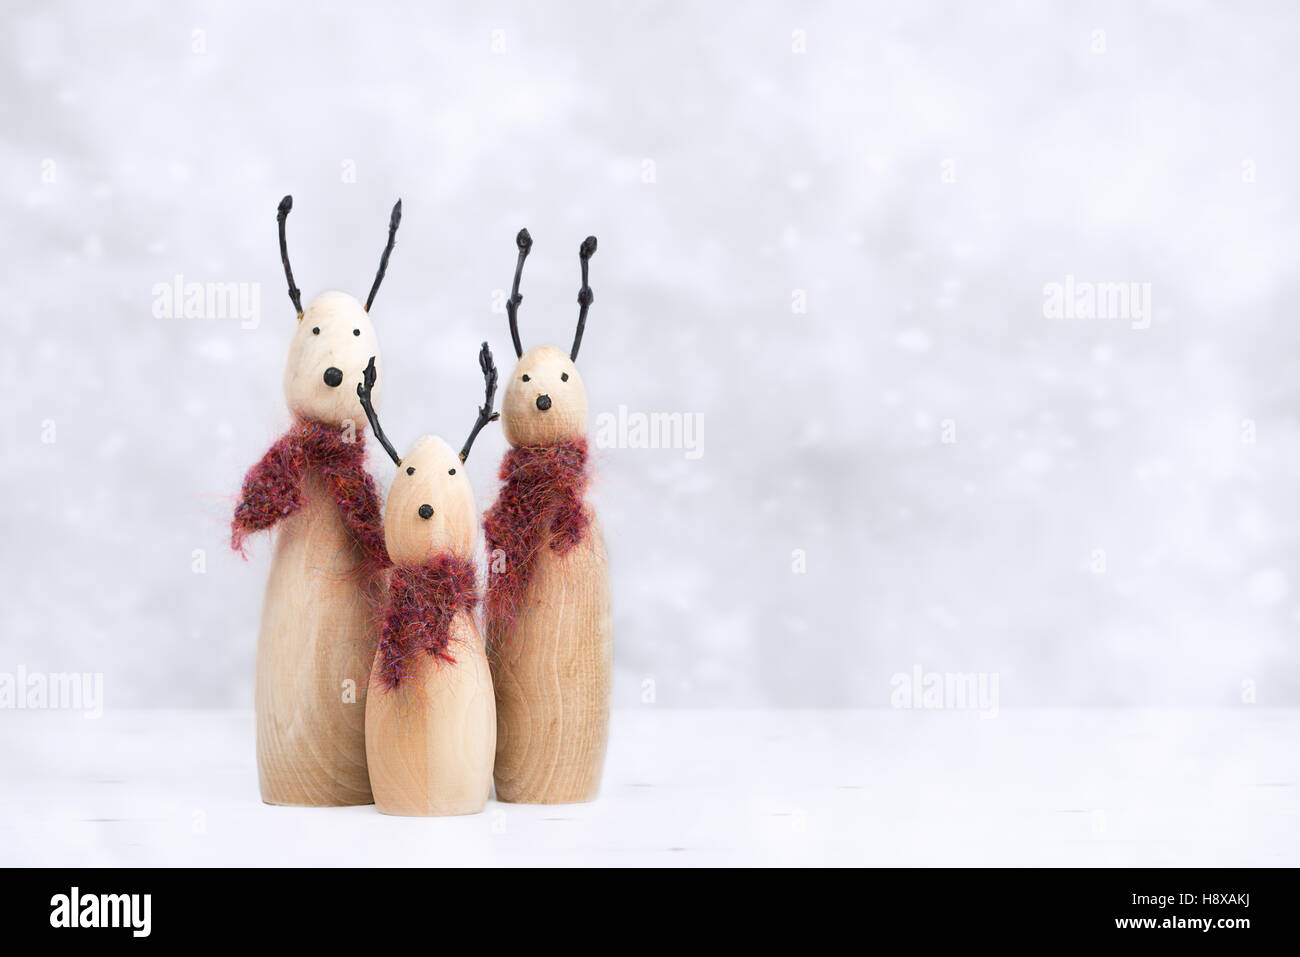 Loco Regreso sabiduría Los renos figuras de animales con bufandas tejidas Fotografía de stock -  Alamy